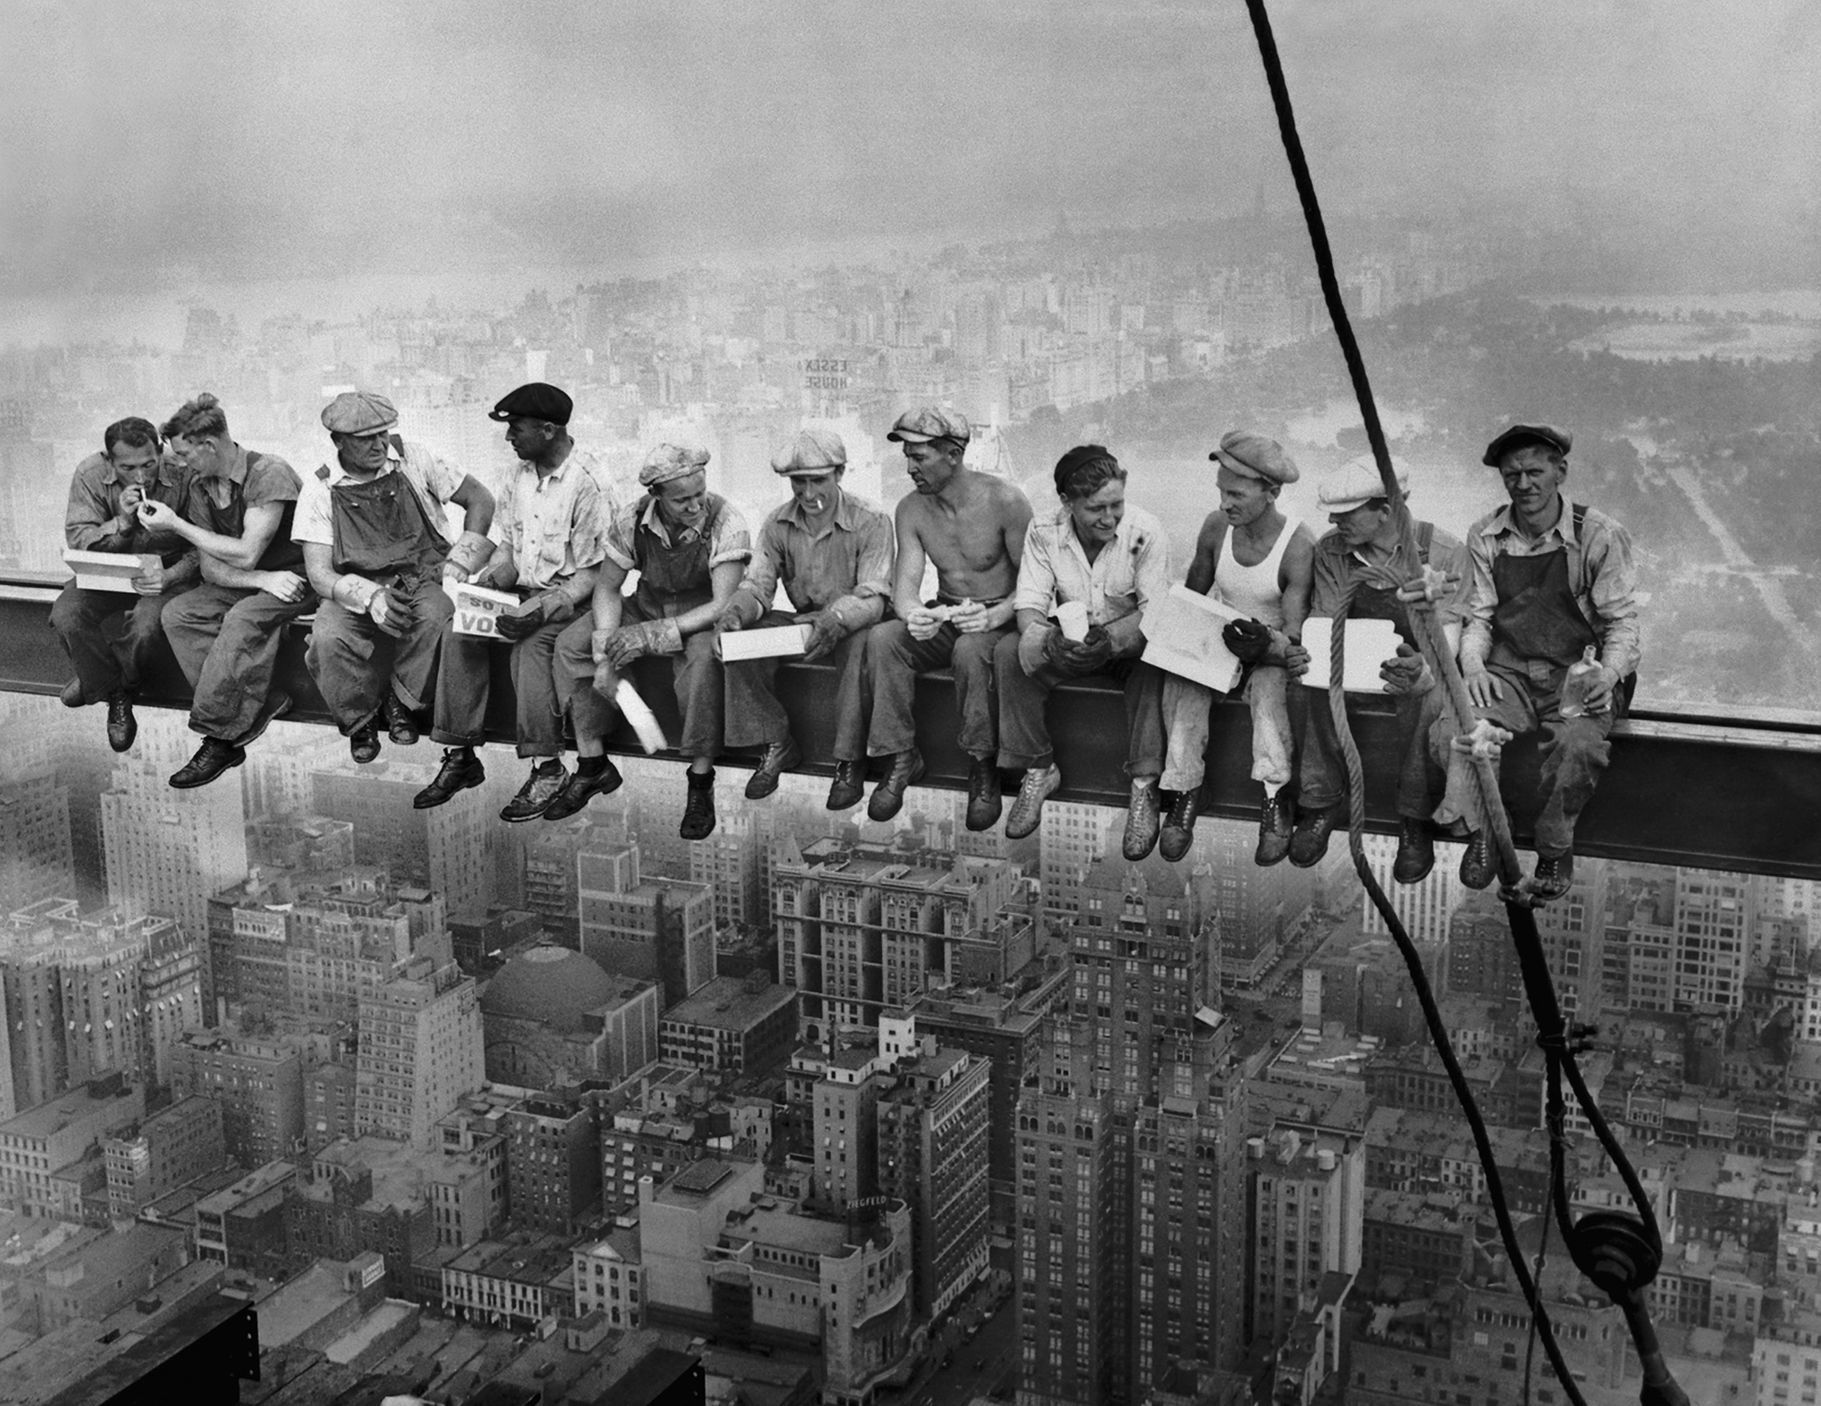 oběd na mrakodrapu, dělníci